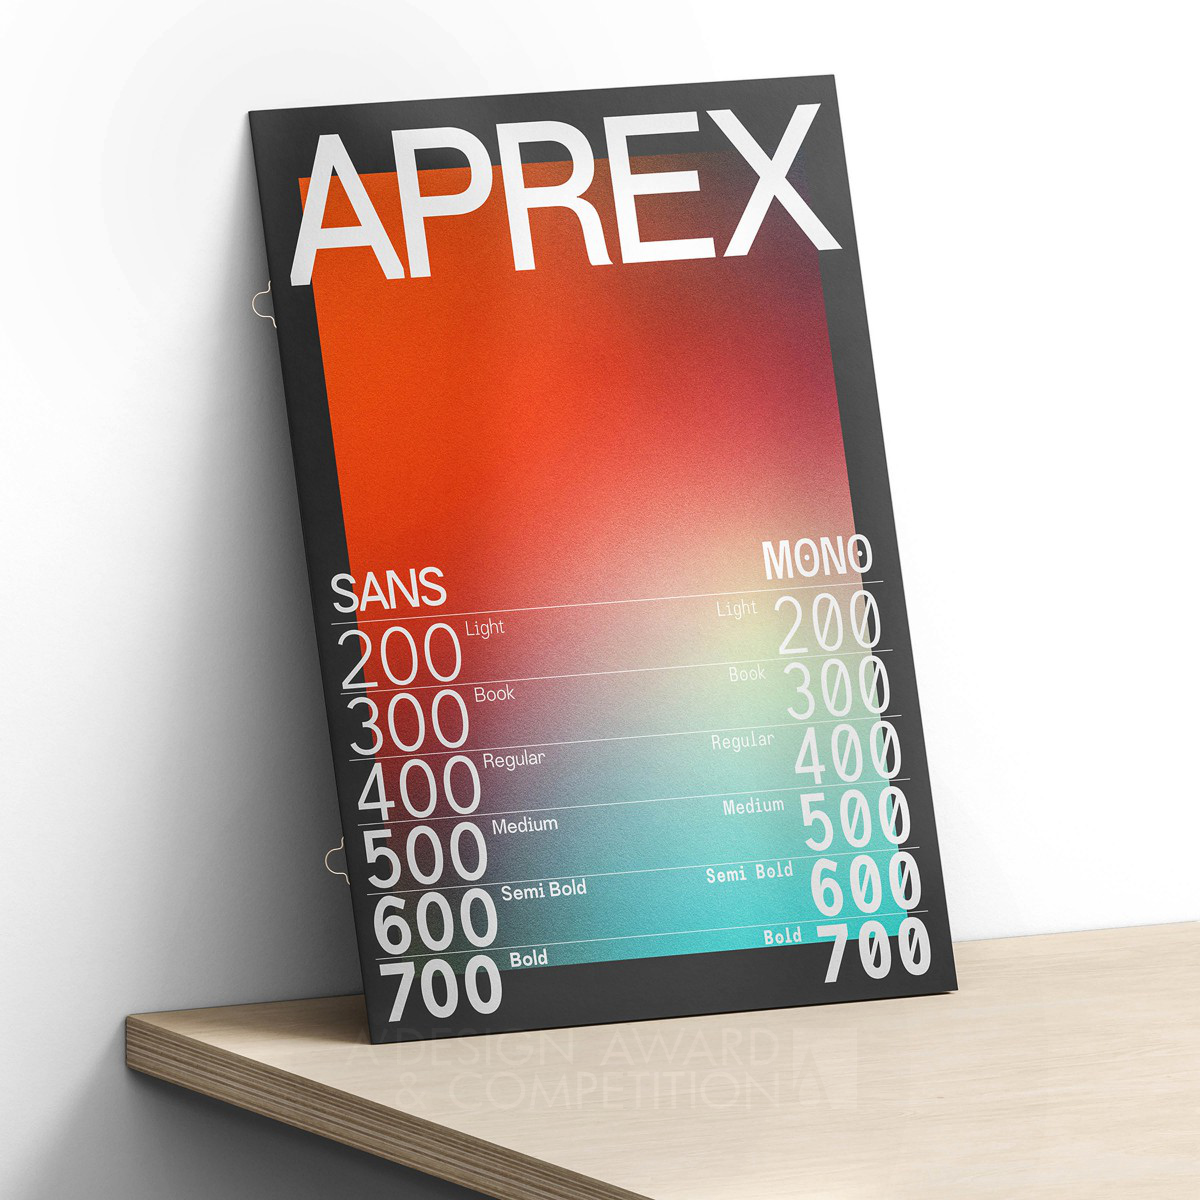 Aprex Family: Menggabungkan Kualitas Minimalis dengan Sentuhan Klasik